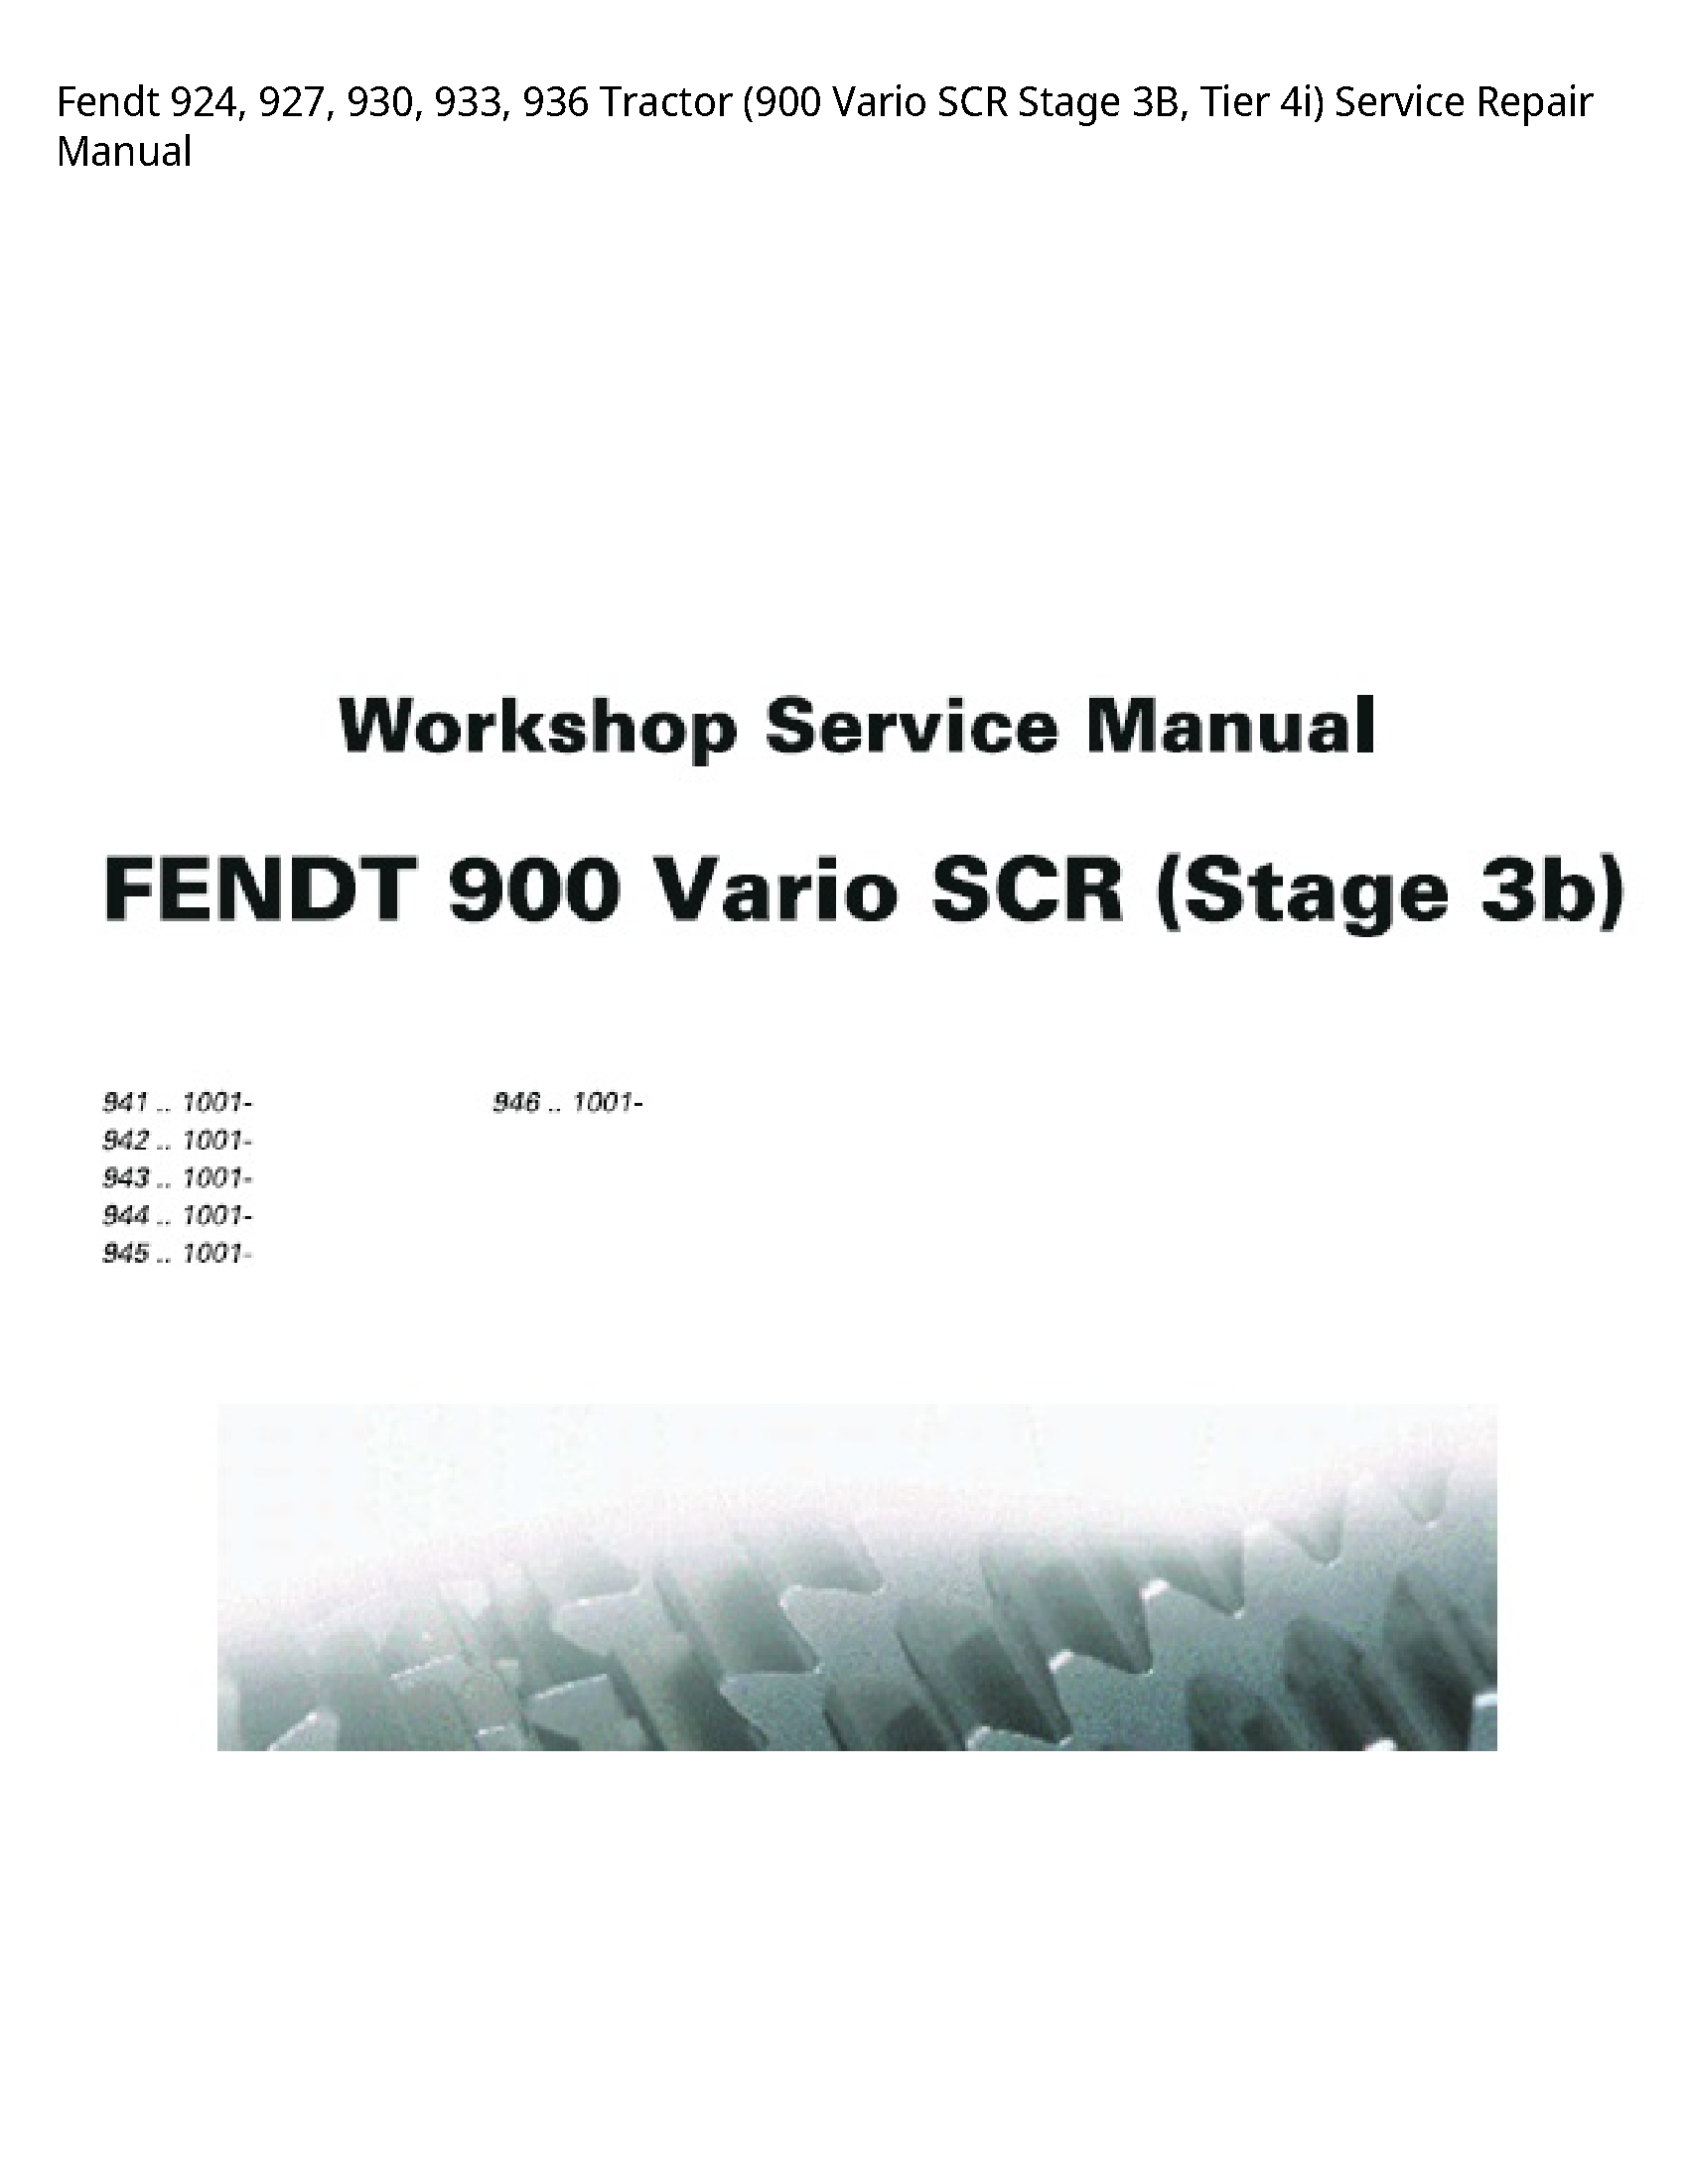 Fendt 924 Tractor Vario SCR Stage Tier manual